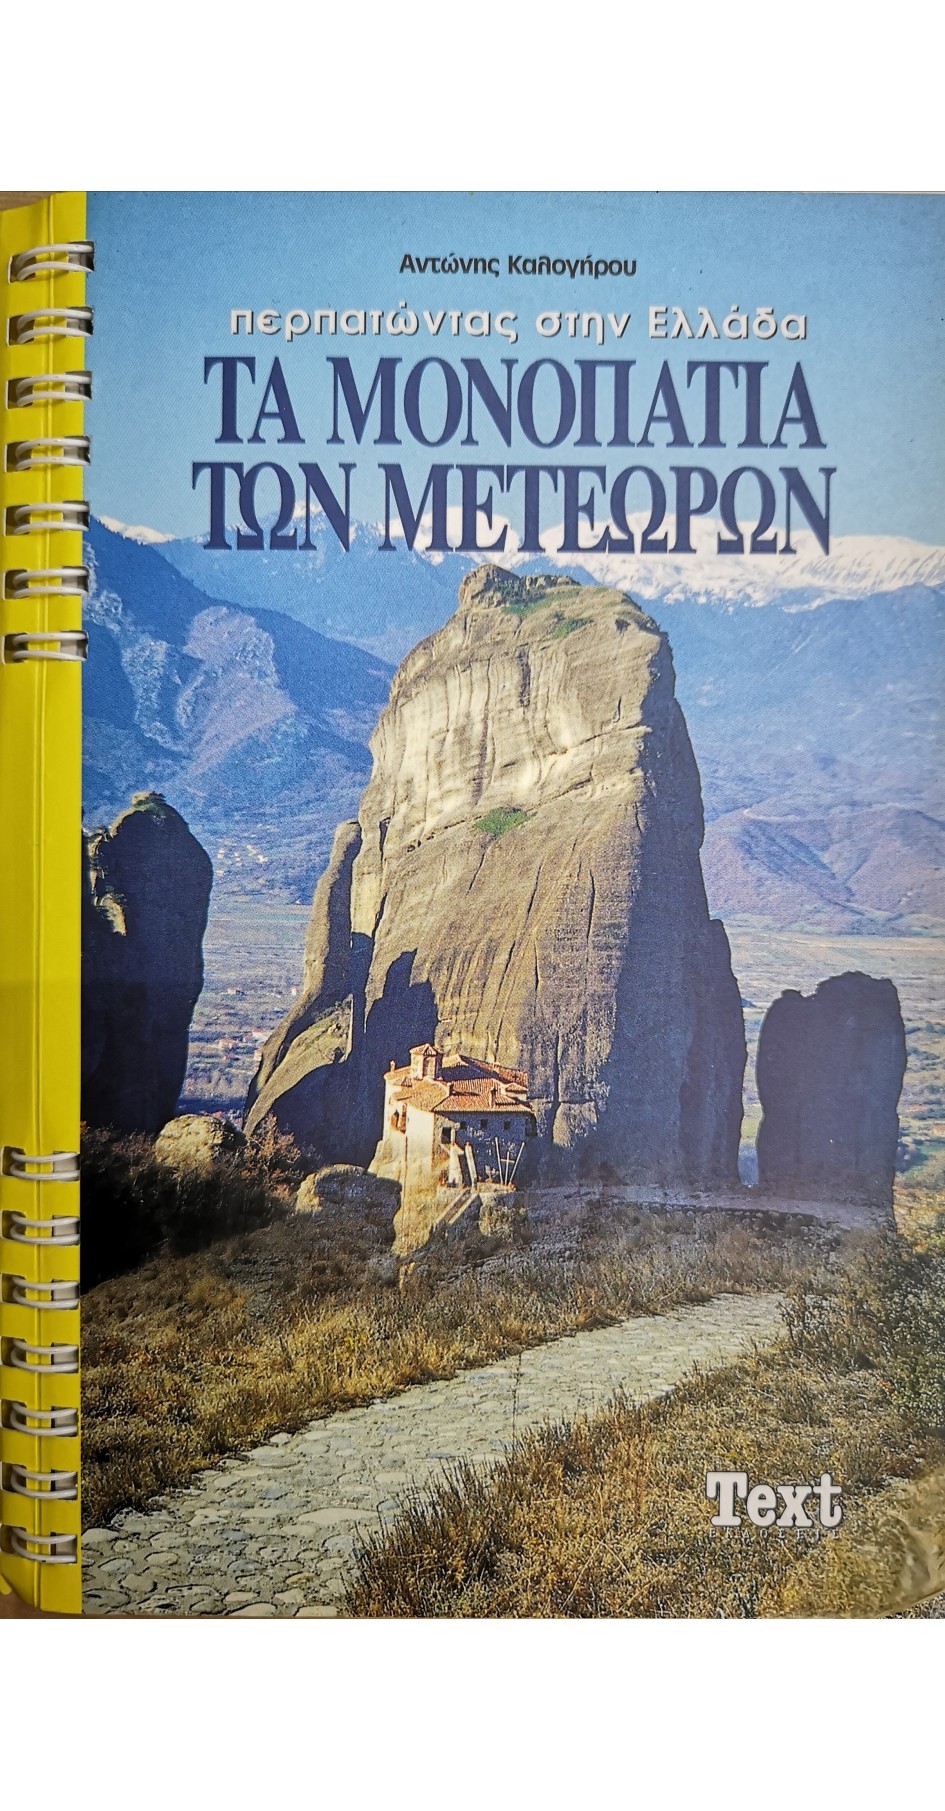 The footpaths of Meteora, trekking in Greece ( book in Greek)